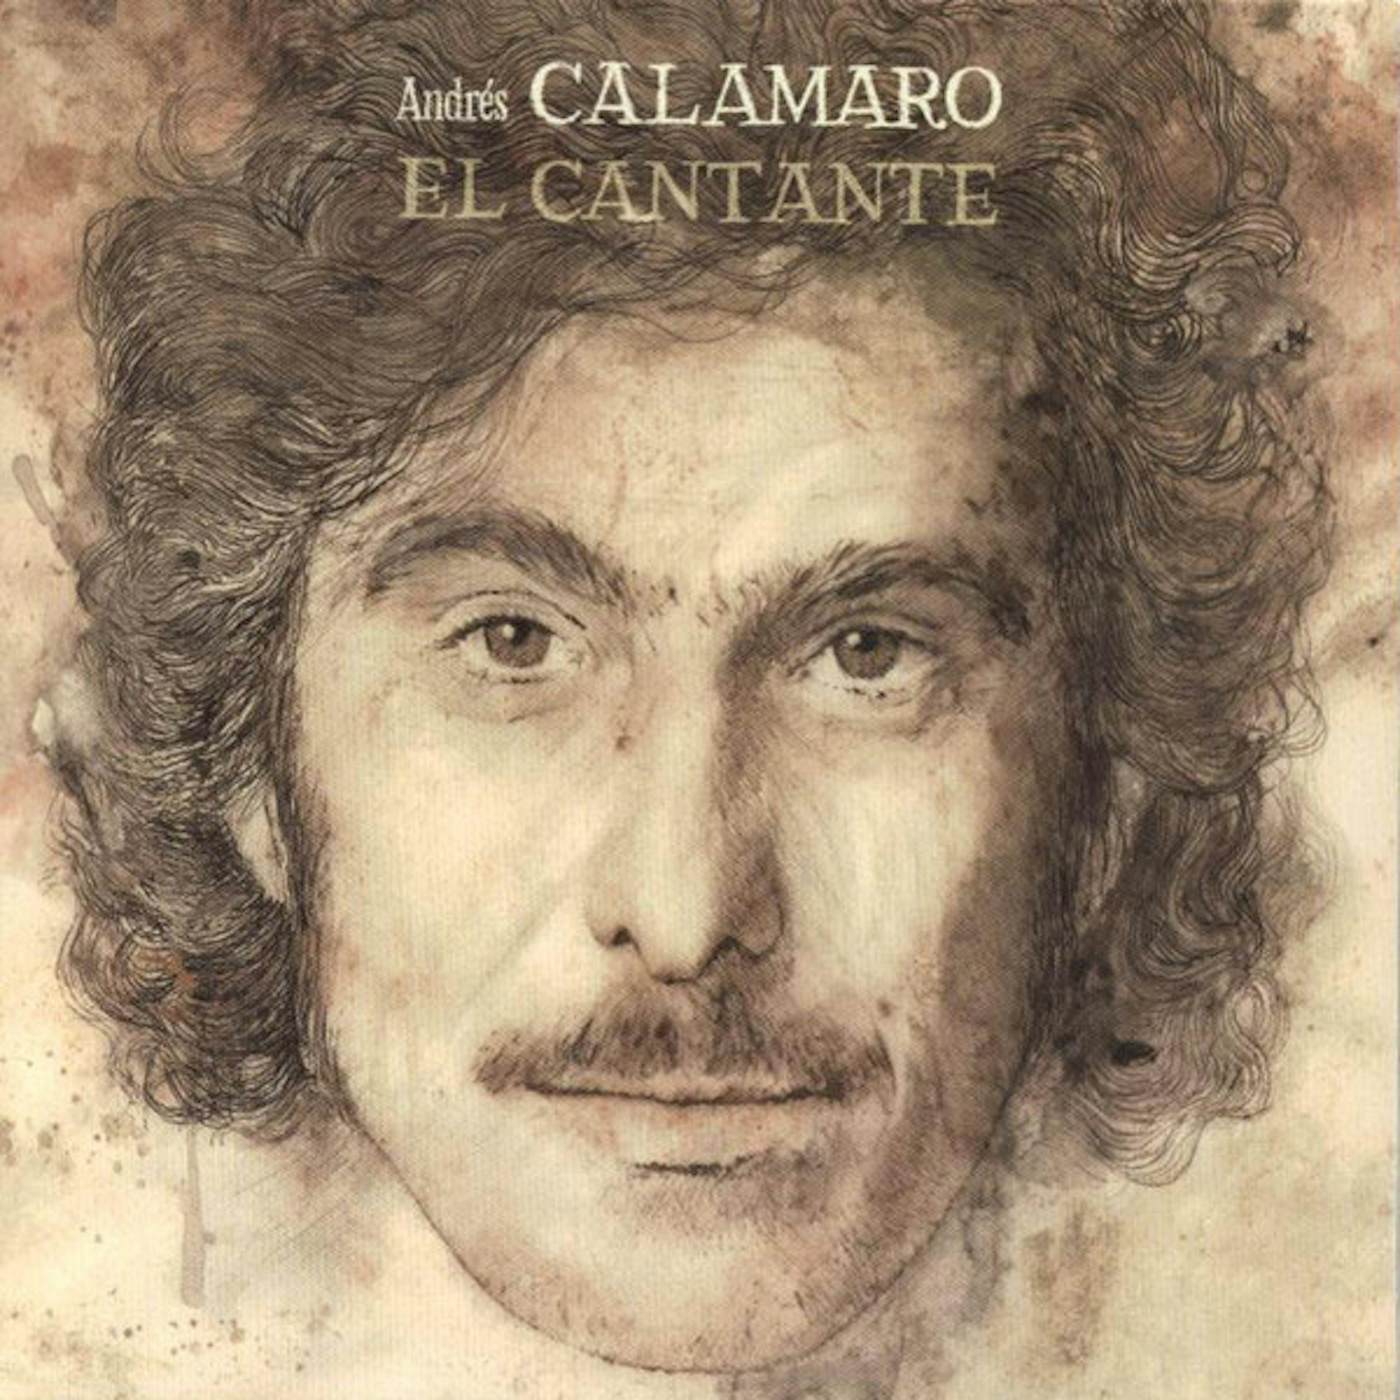 Andrés Calamaro EL CANTANTE - JEWEL BOX CD